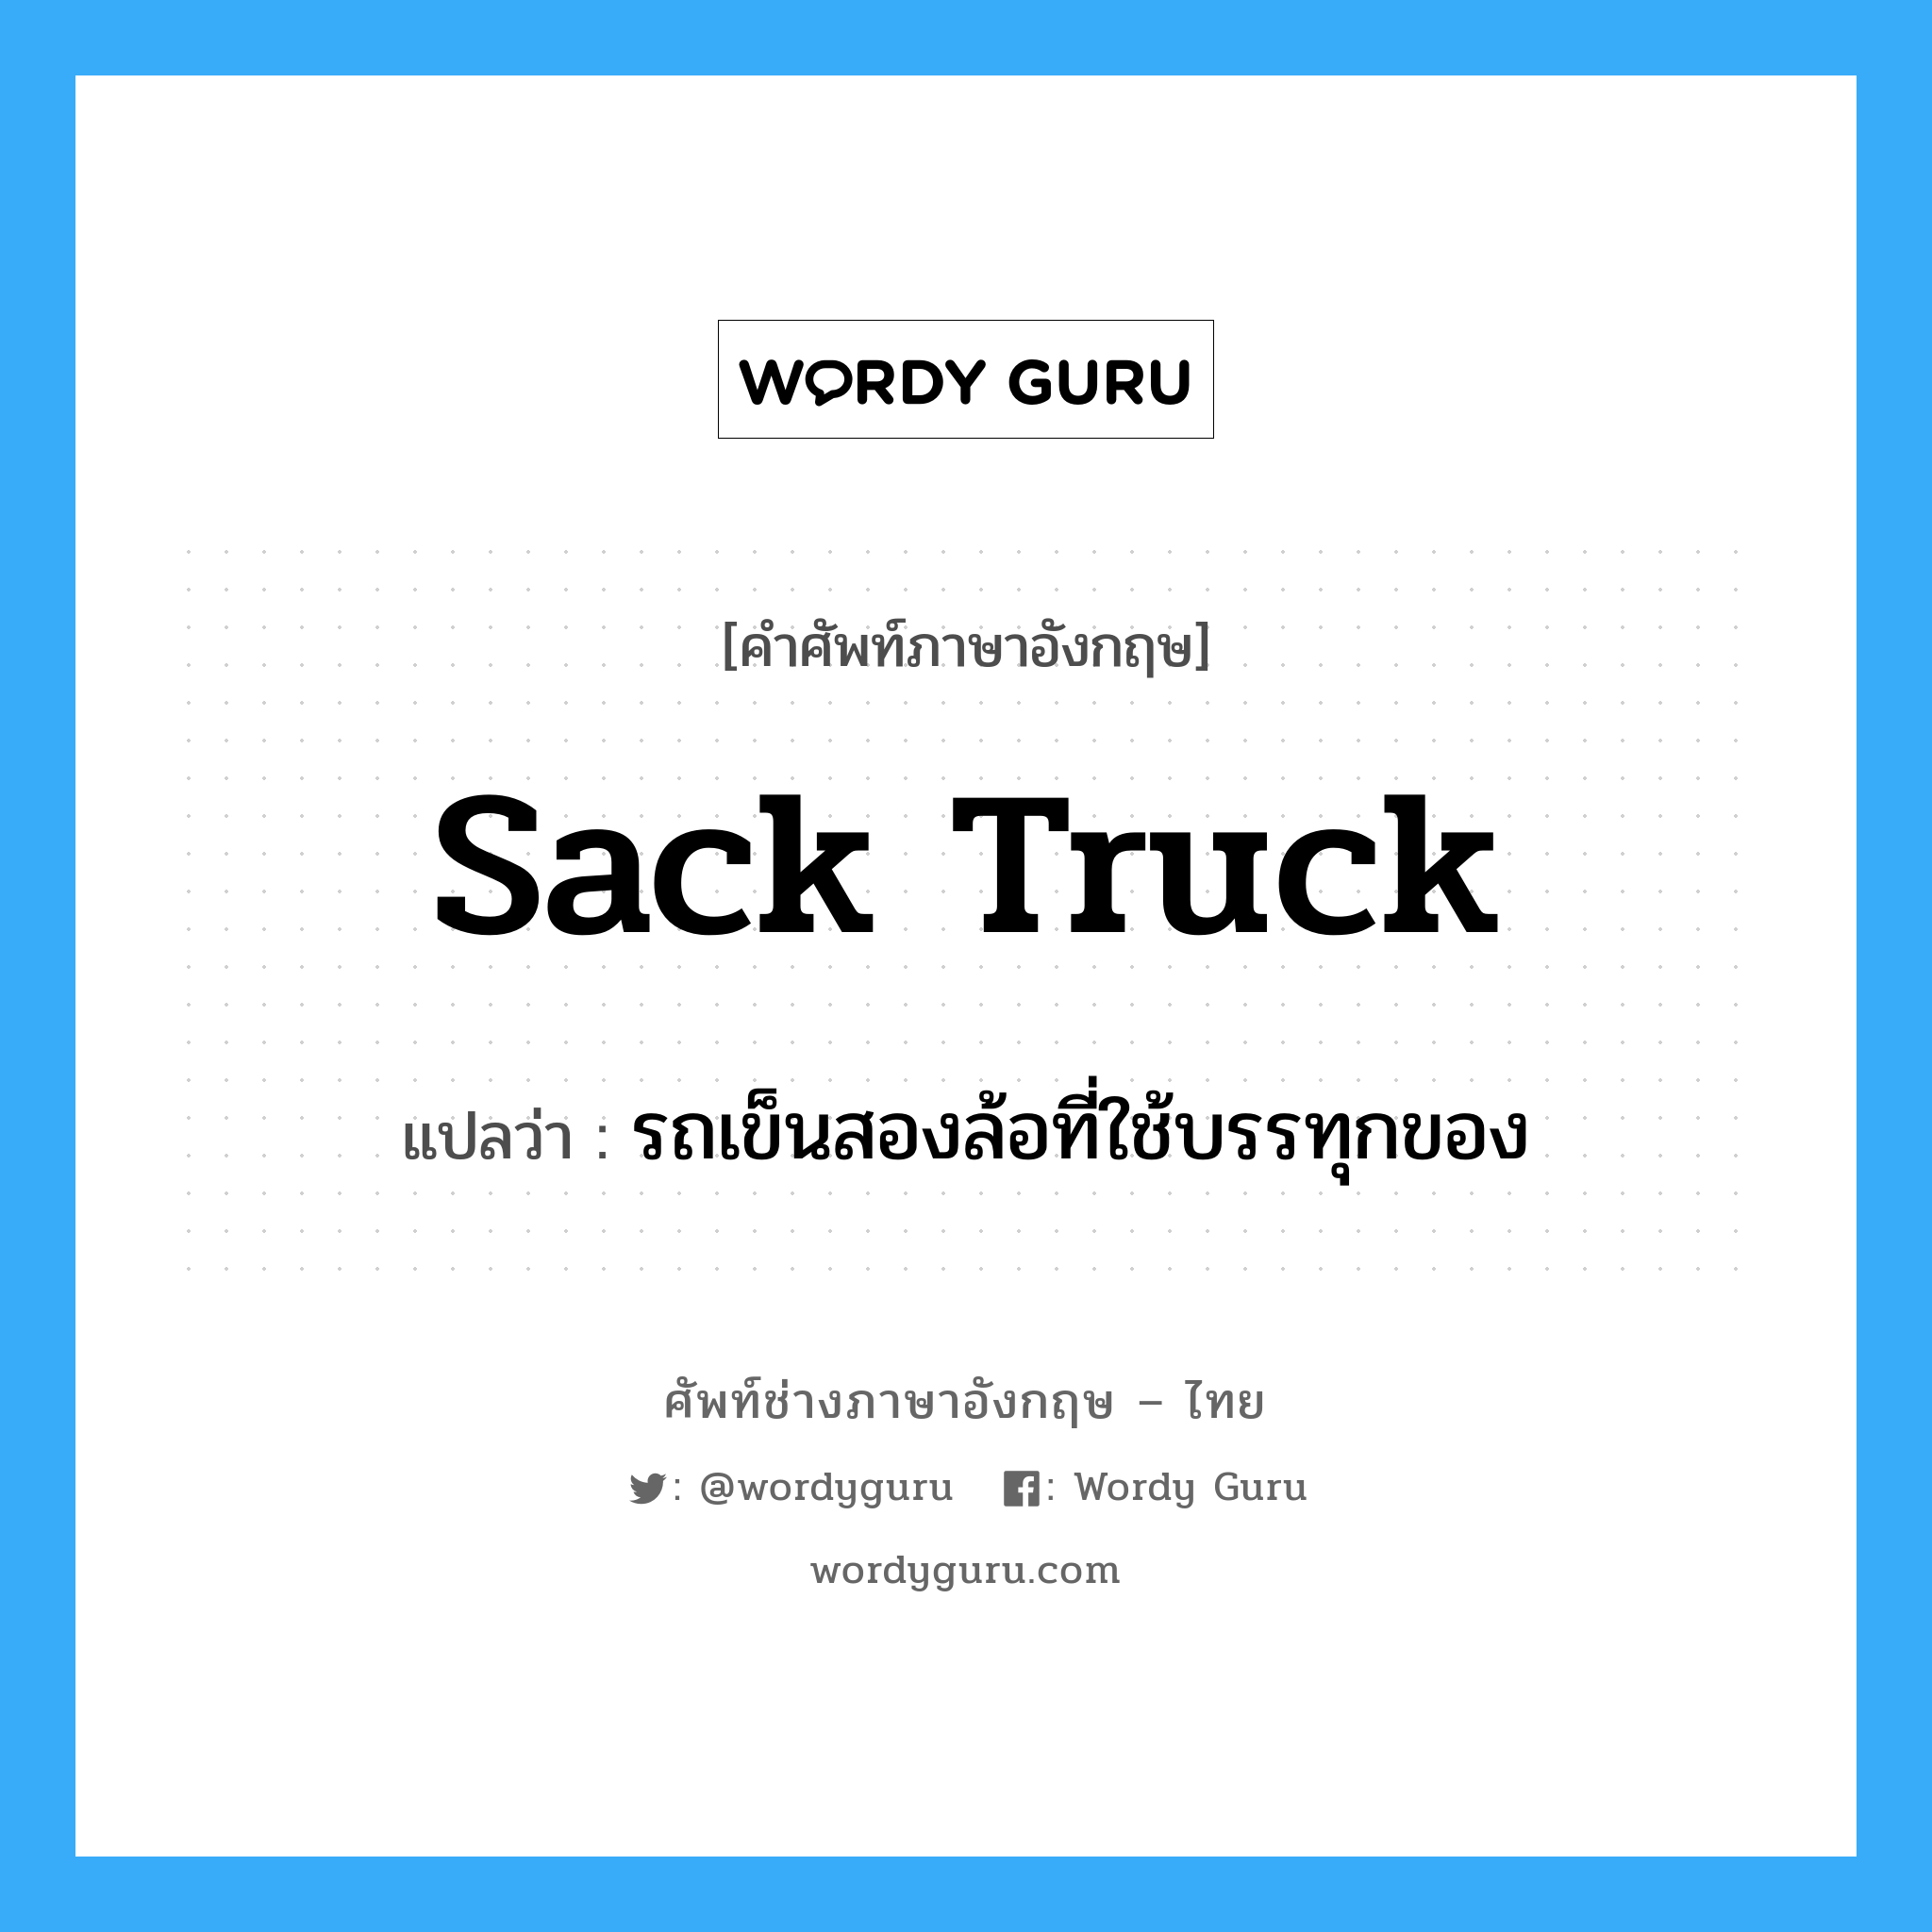 sack truck แปลว่า?, คำศัพท์ช่างภาษาอังกฤษ - ไทย sack truck คำศัพท์ภาษาอังกฤษ sack truck แปลว่า รถเข็นสองล้อที่ใช้บรรทุกของ